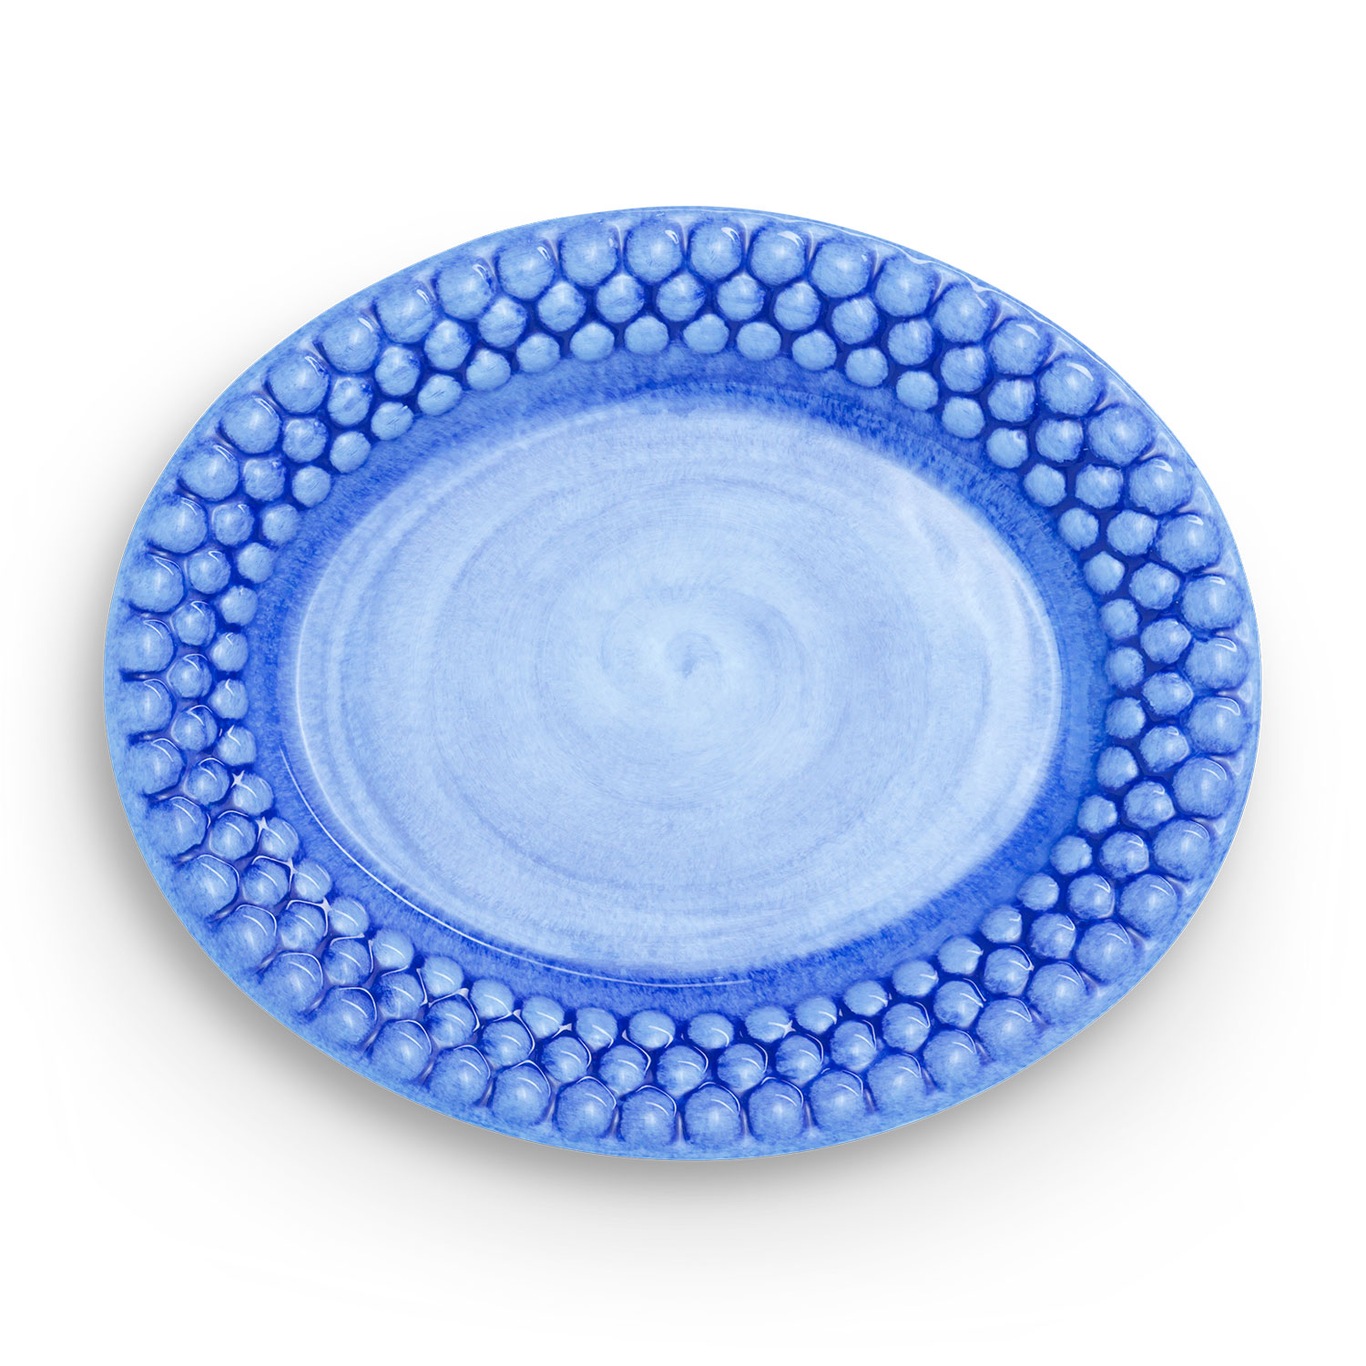 Bubbles Oval Plate 20 cm, Light Blue